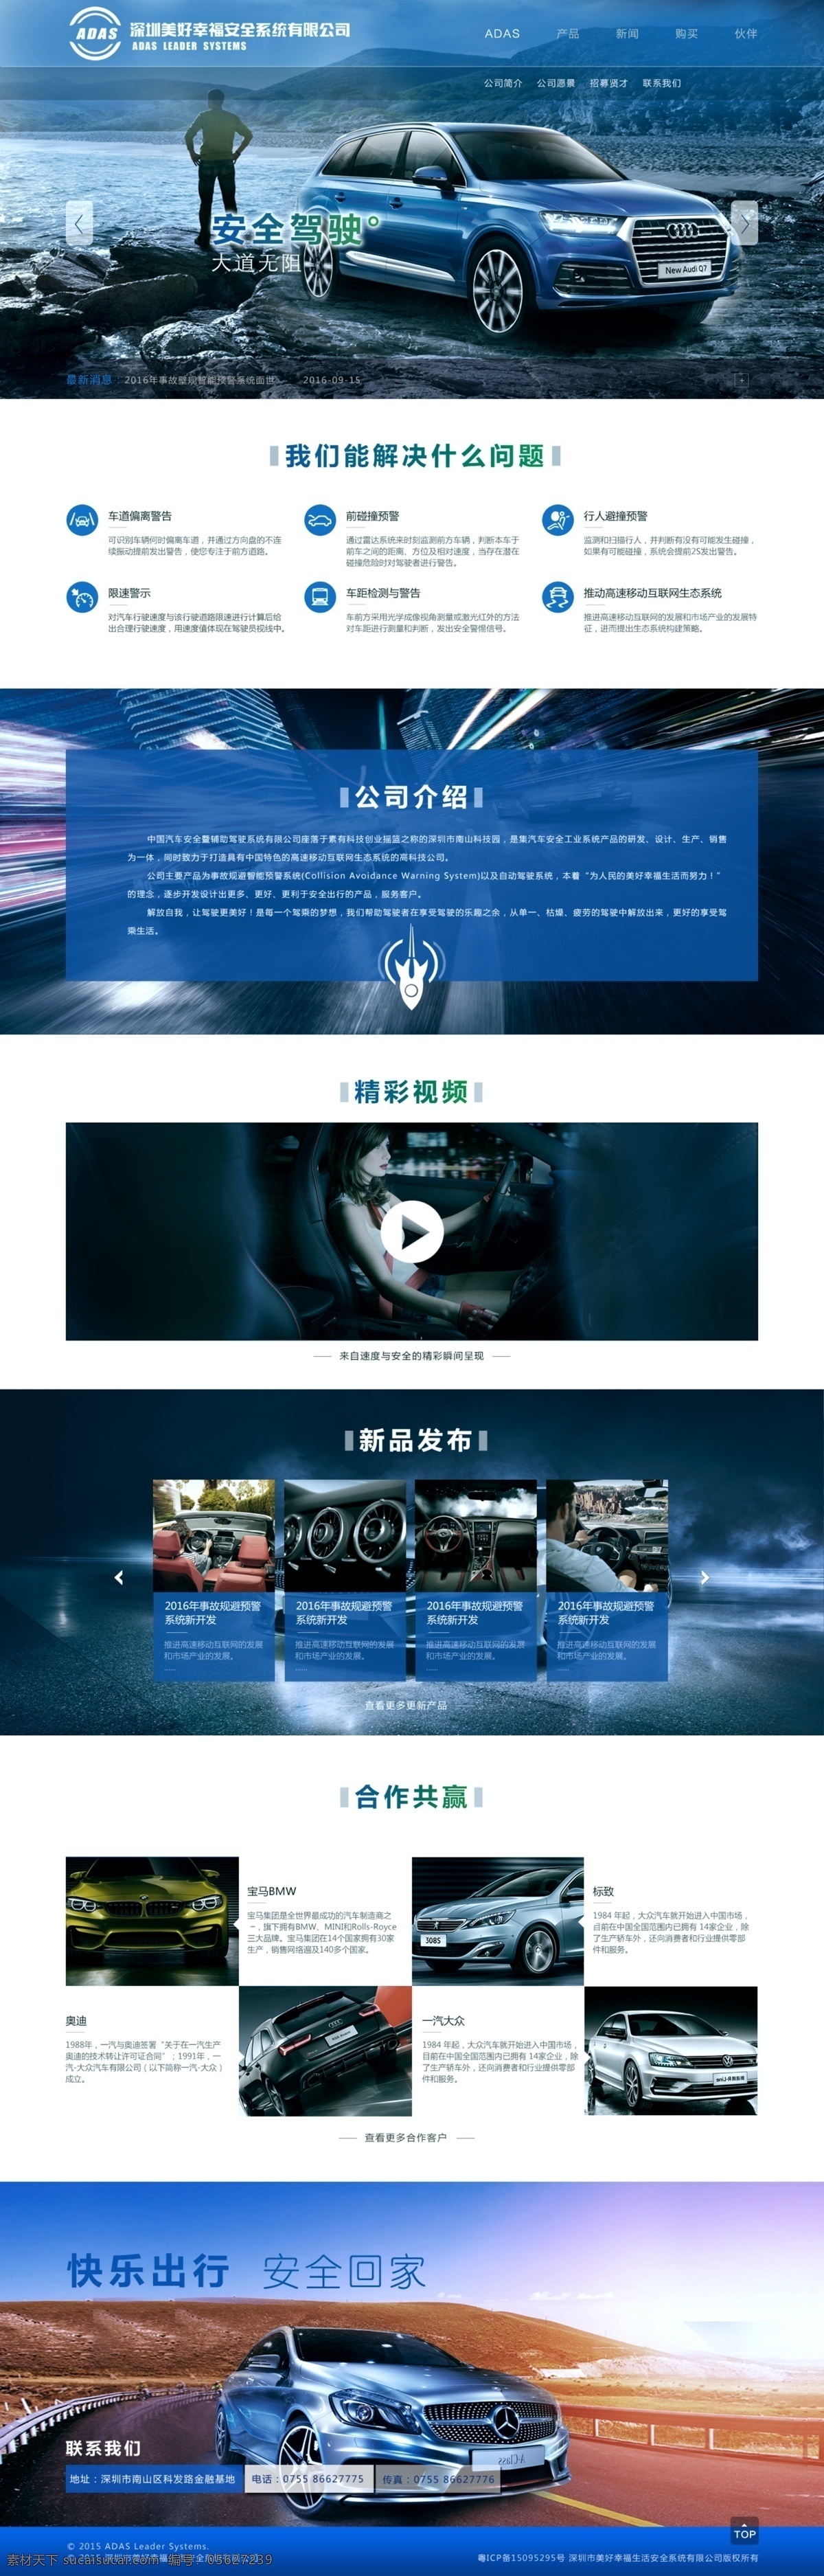 汽车 安全 系统 管网 首页 官网 出行 web 界面设计 中文模板